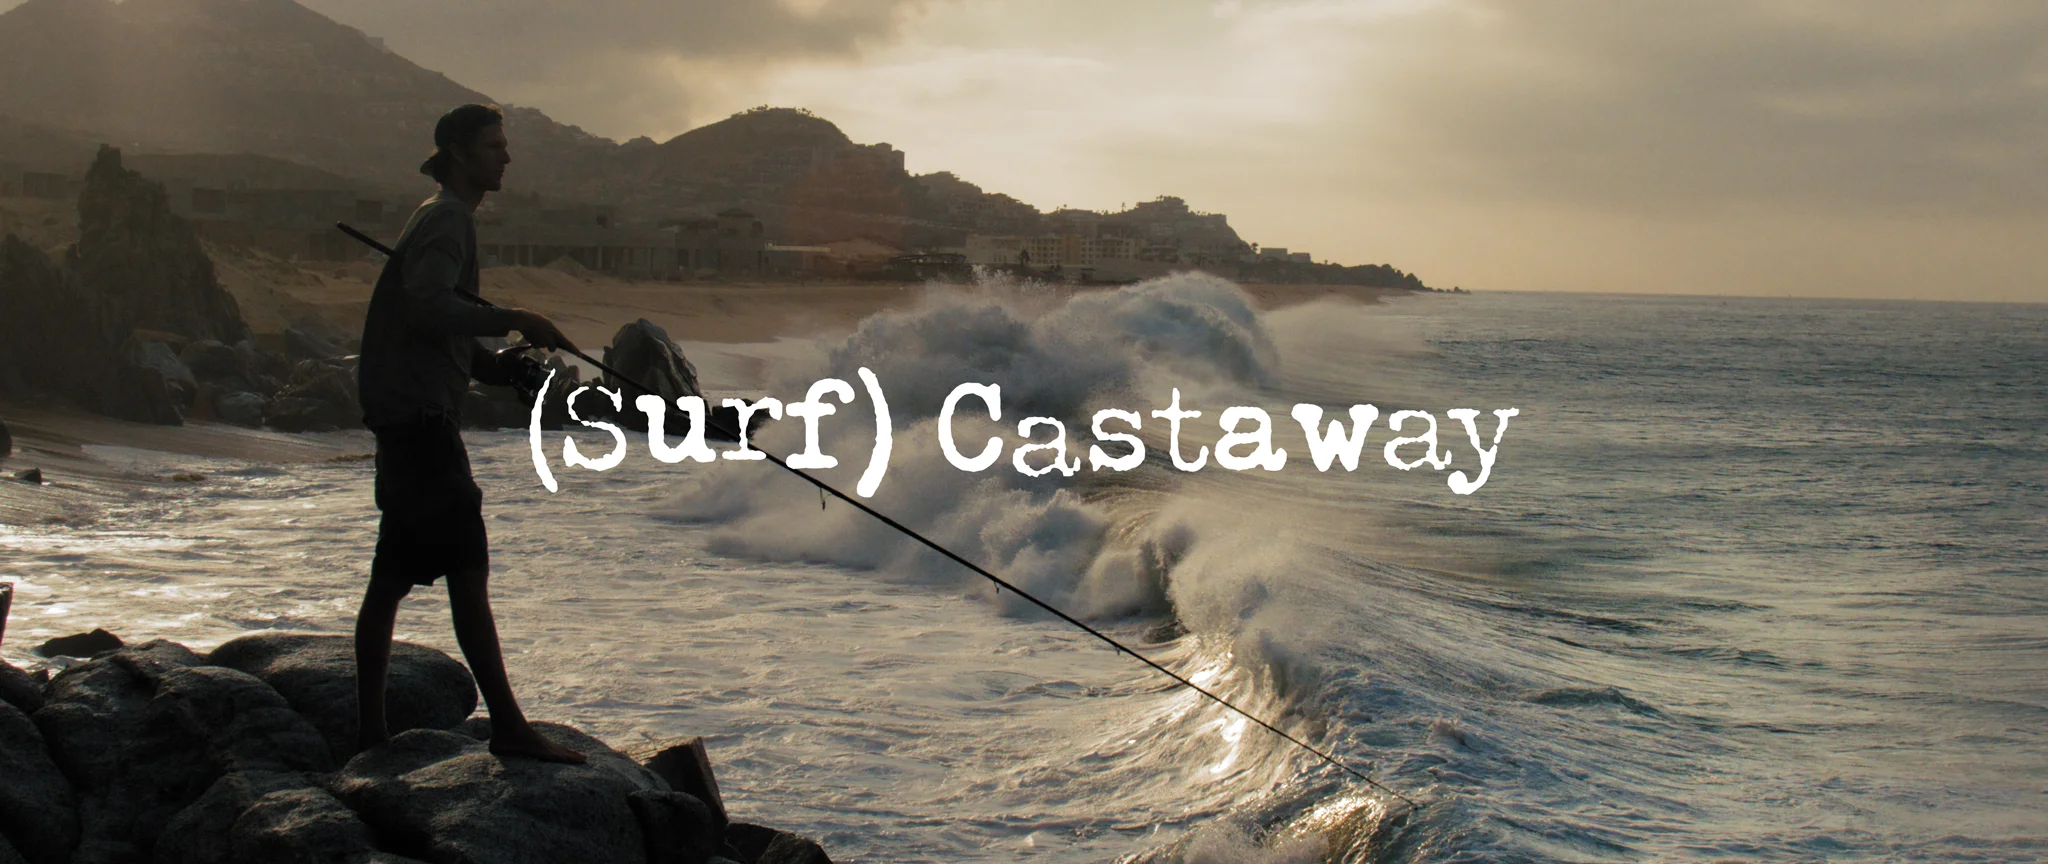 Castaway, Fishing